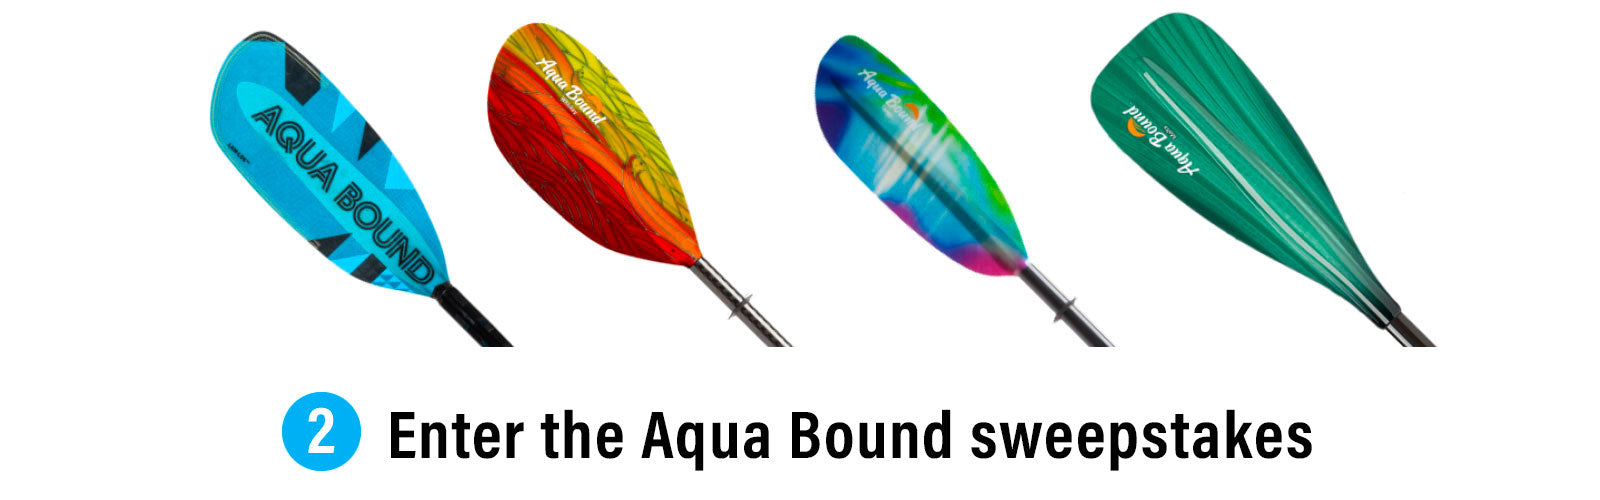 Enter the Aqua Bound sweepstakes